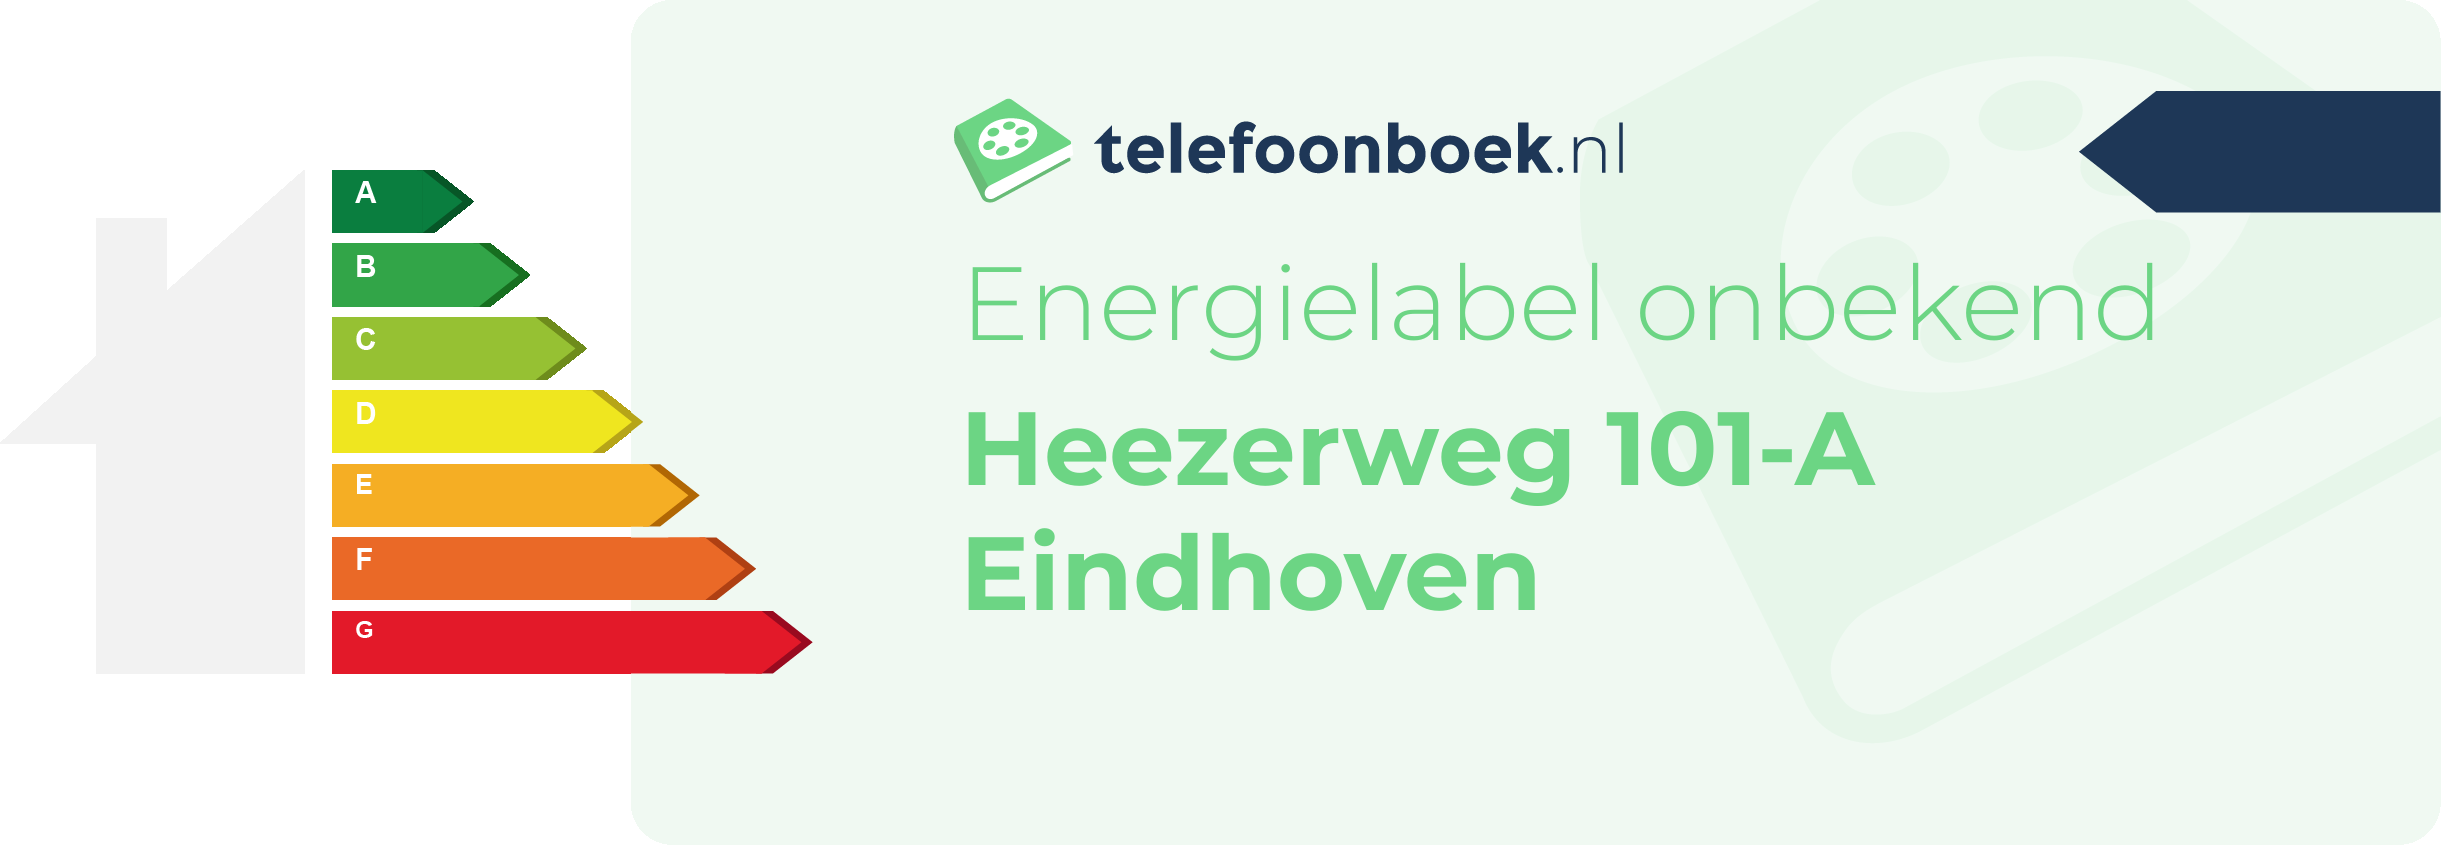 Energielabel Heezerweg 101-A Eindhoven